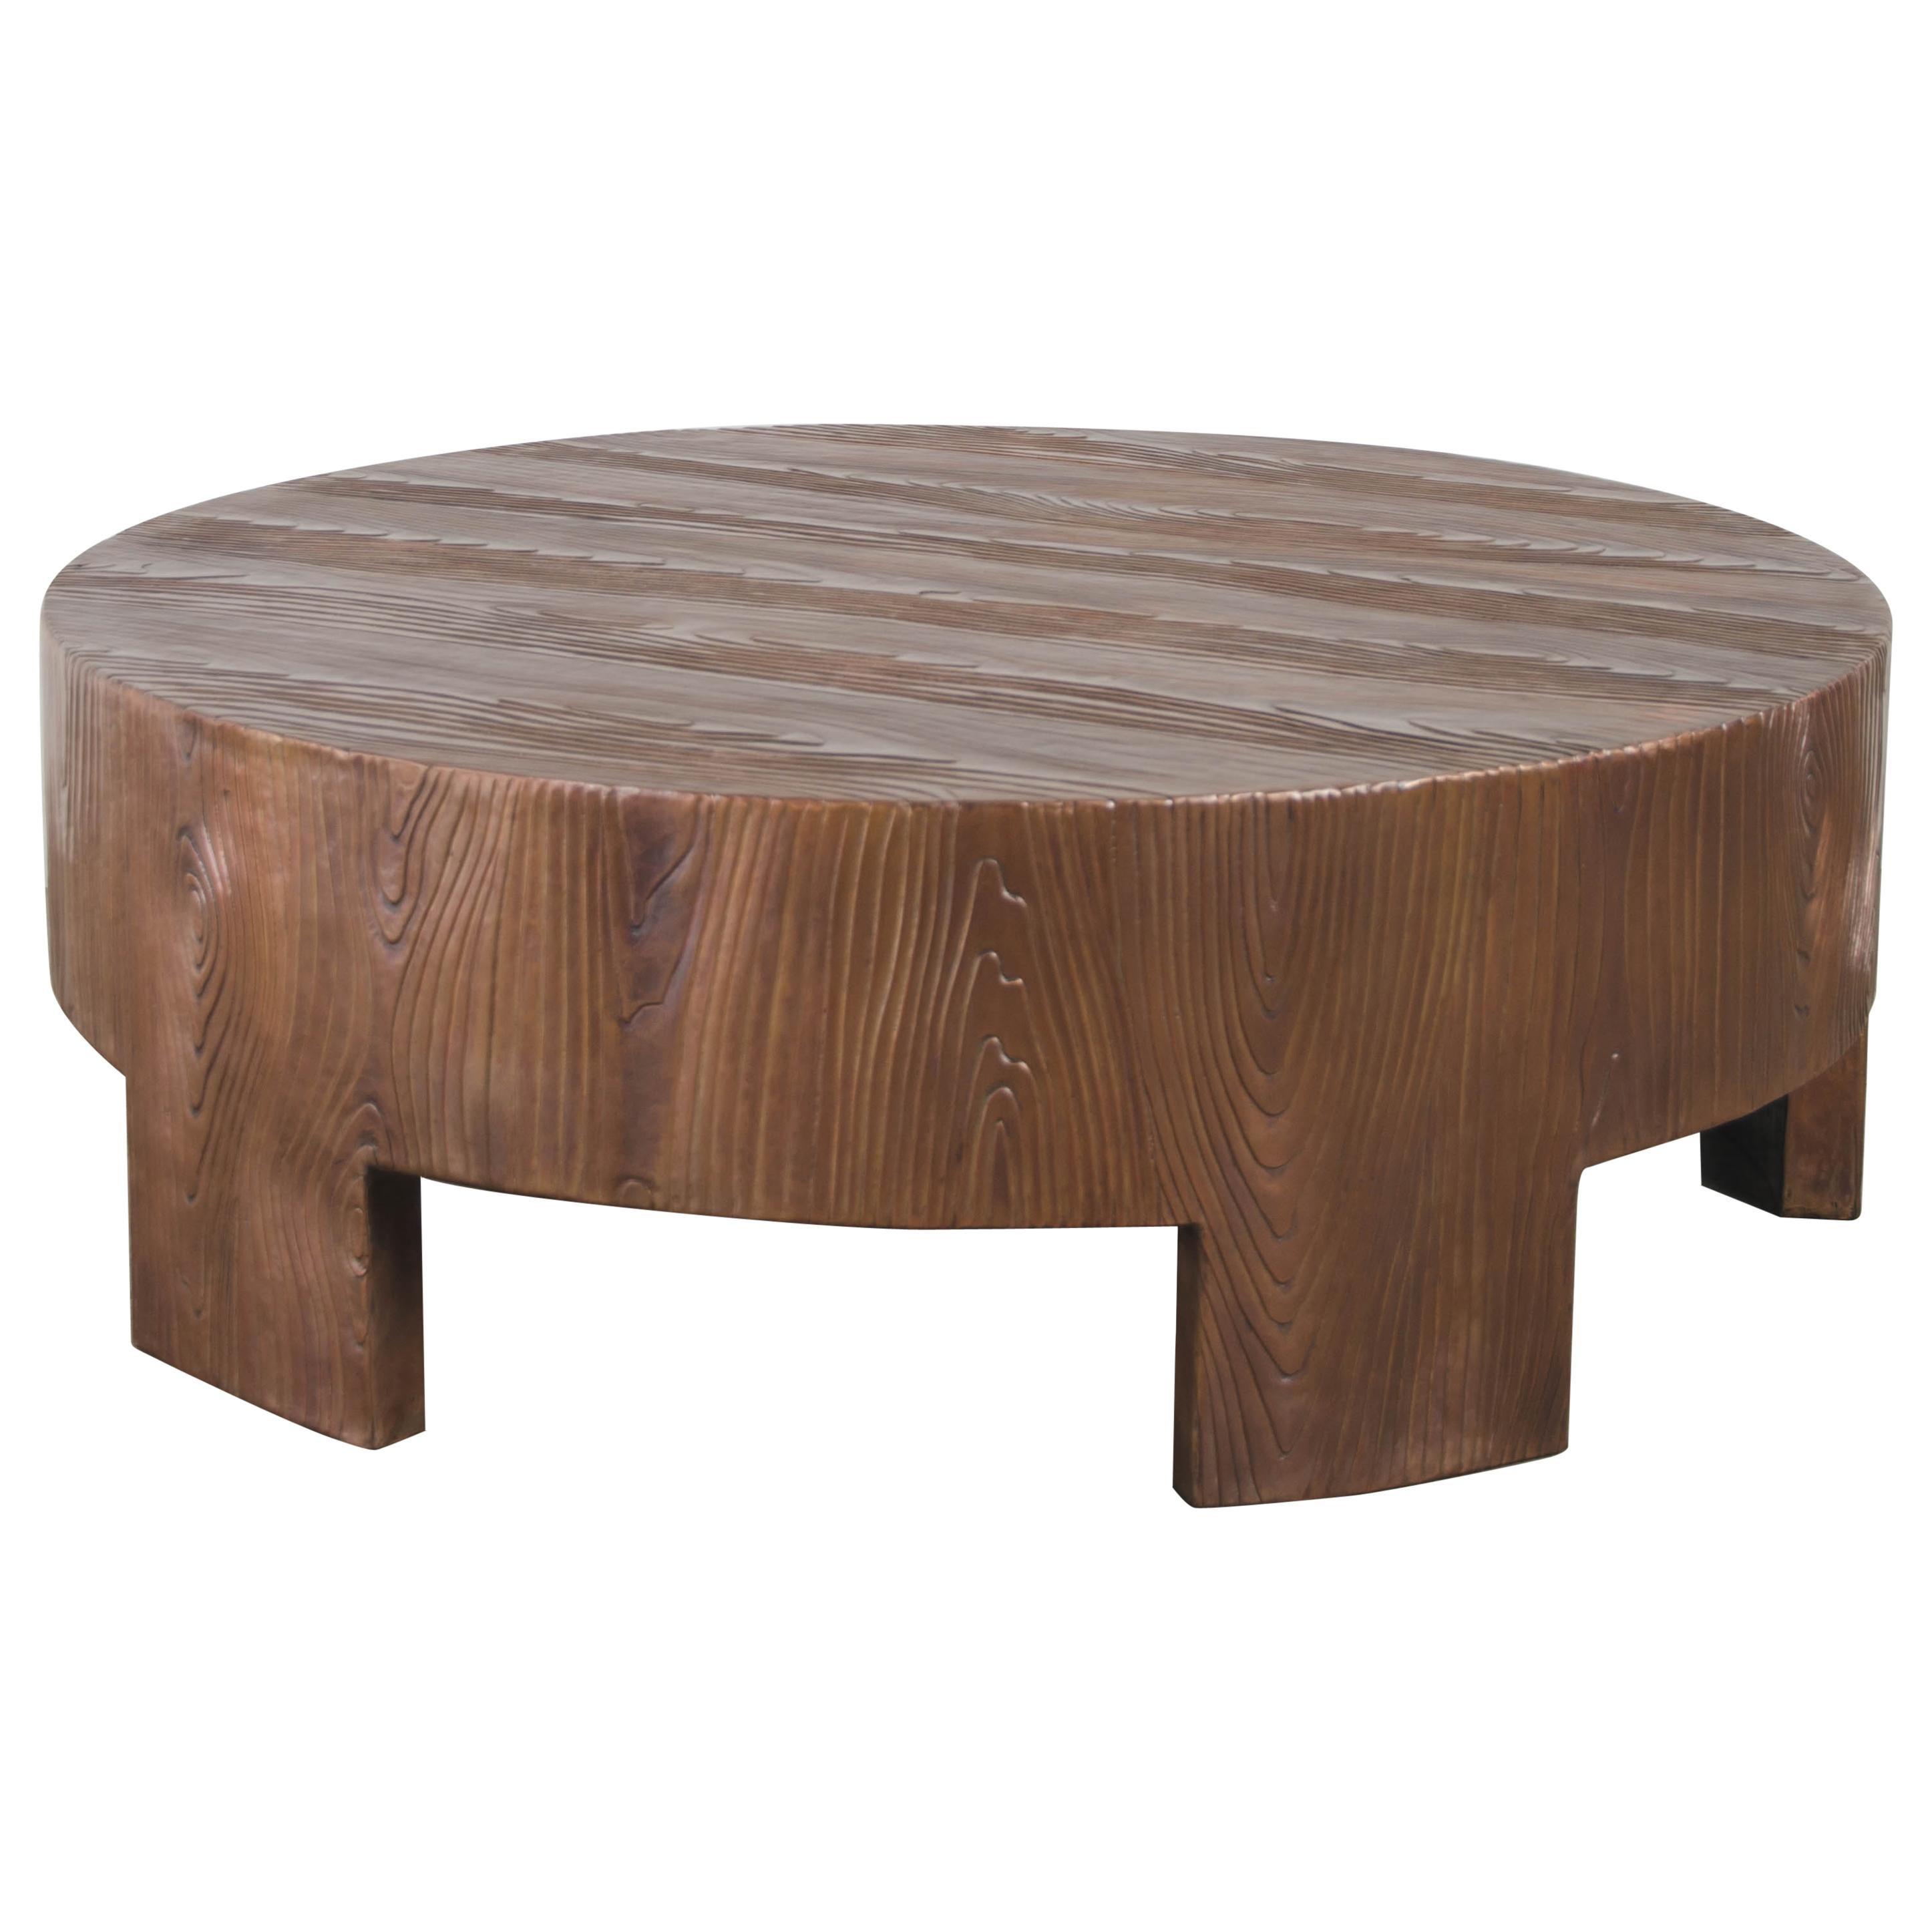 Niedriger runder Tisch, Holzmaserung, antikes Kupfer von Robert Kuo, handgefertigt